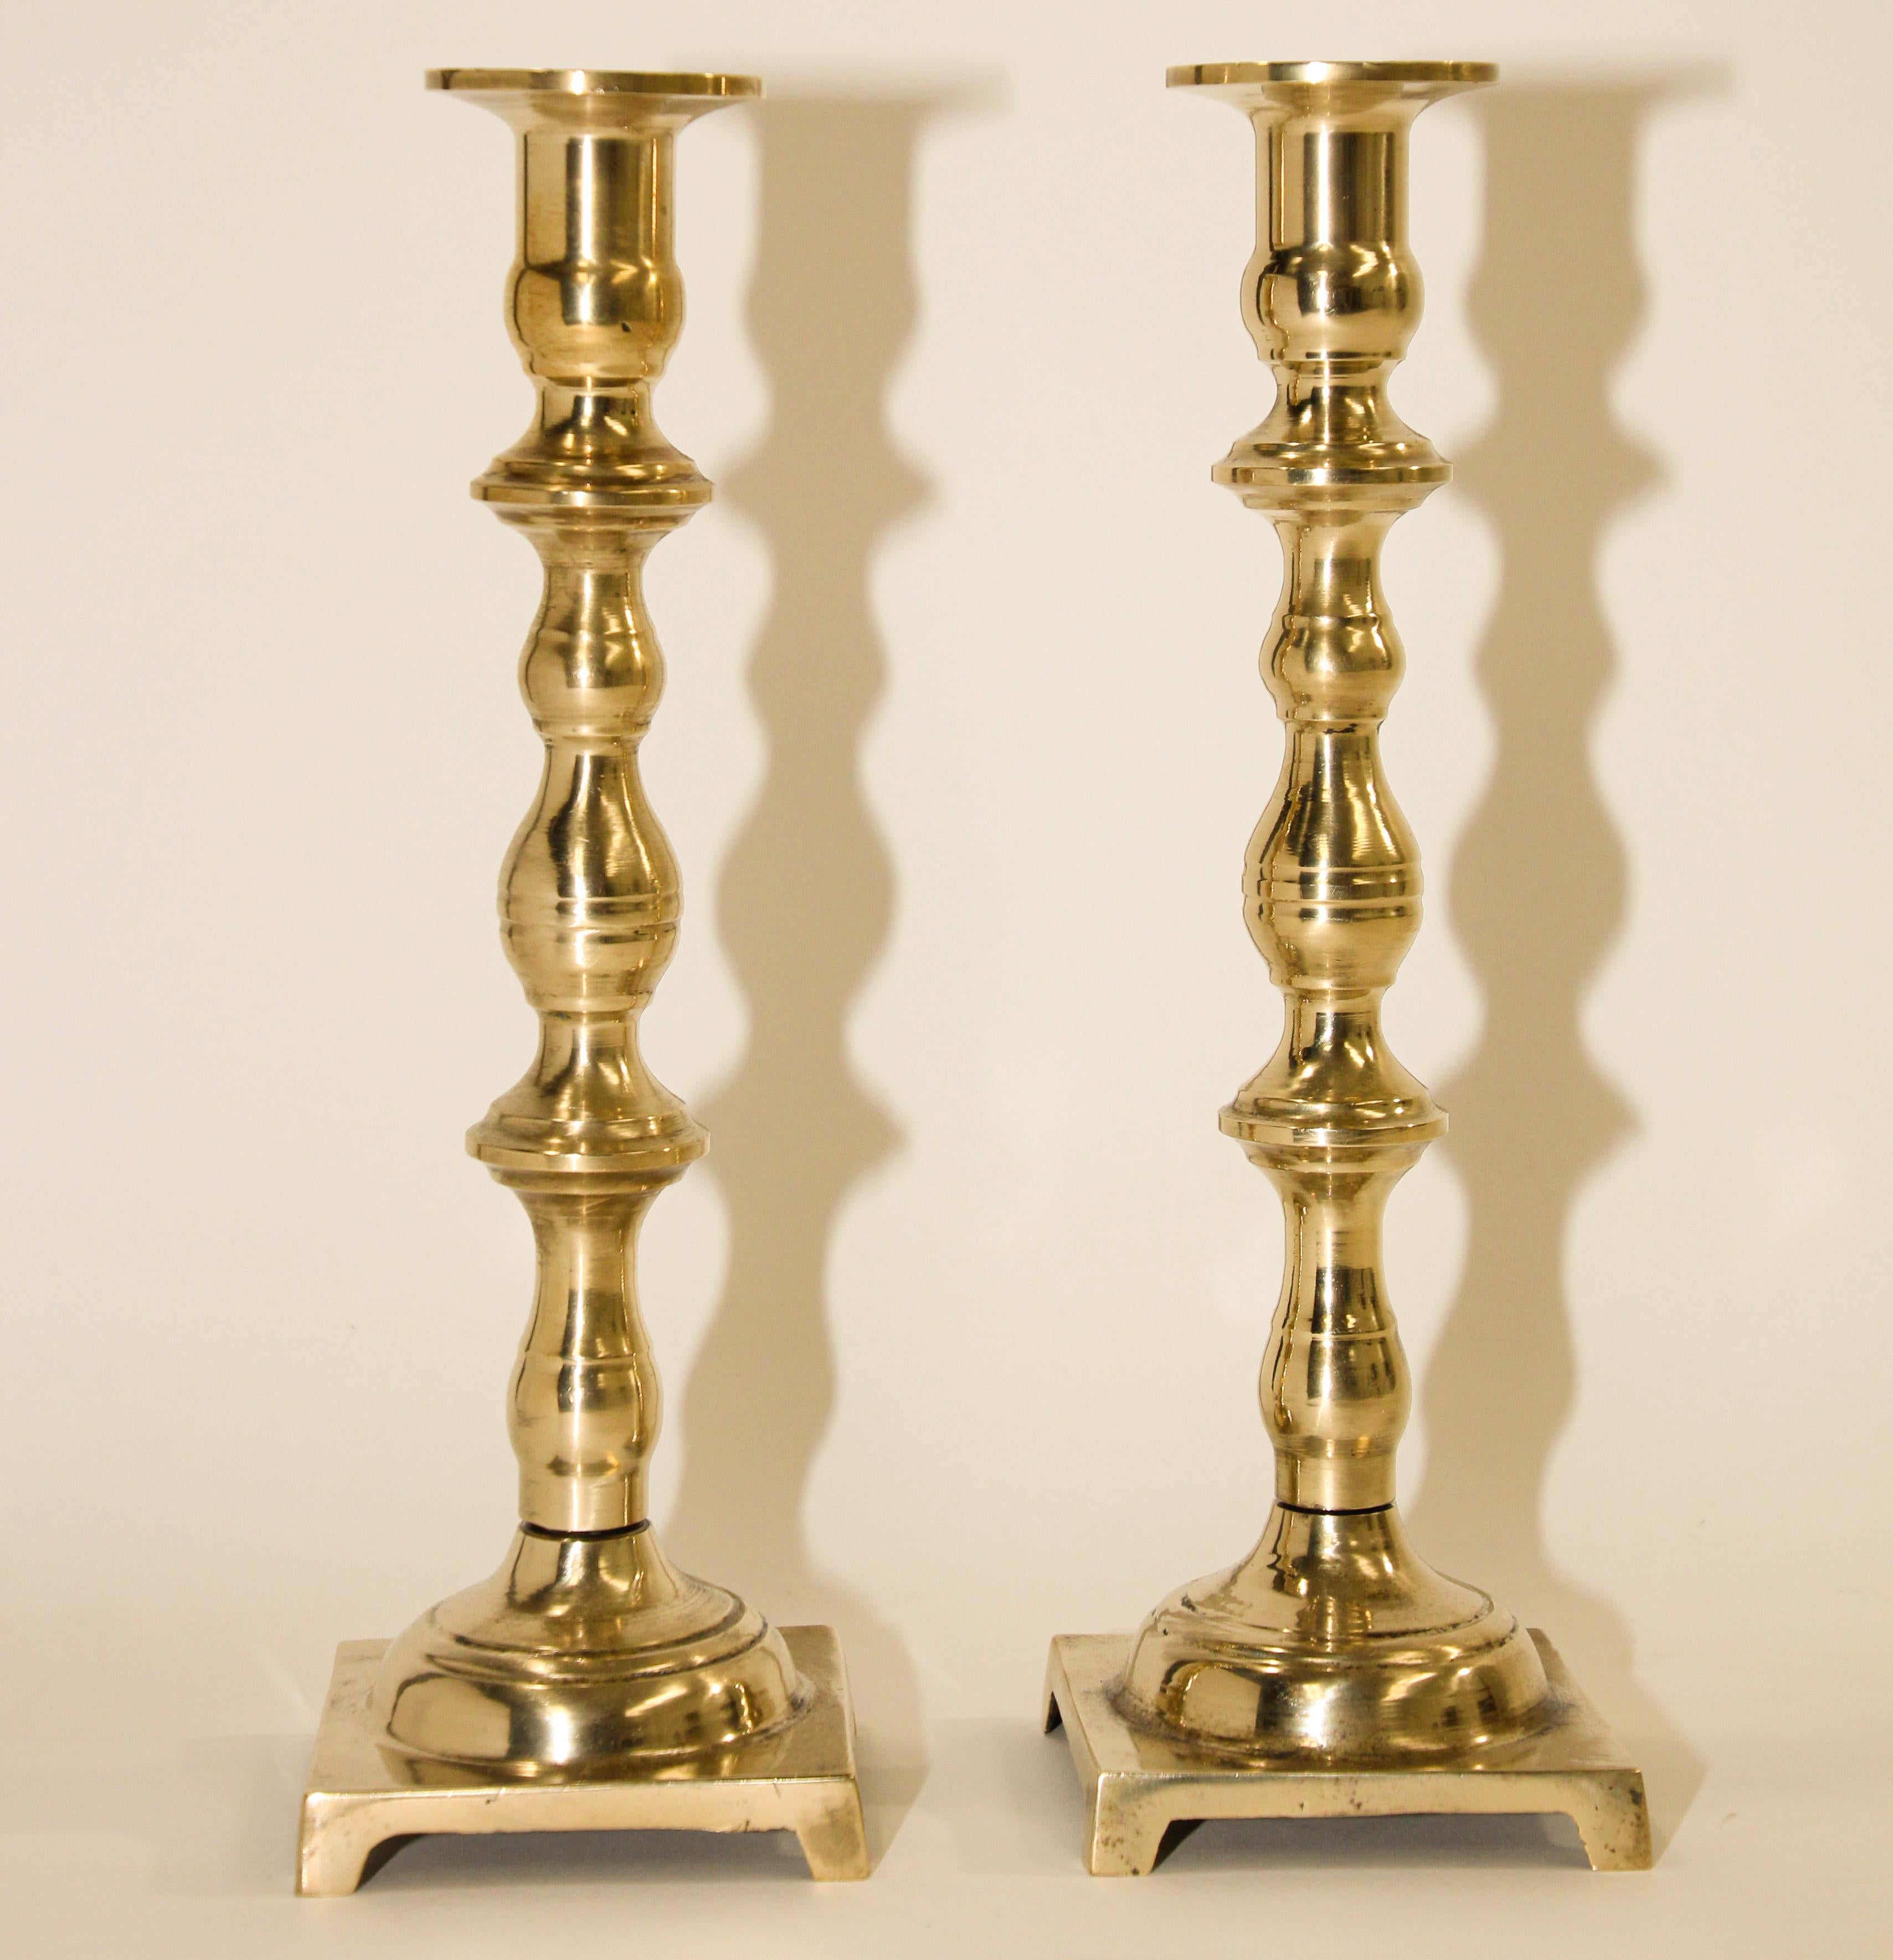 Paar georgianische Kerzenständer aus antikem Messing
Ein eher ungewöhnliches Paar englischer Kerzenhalter aus massivem Messing.
19. Jahrhundert Paar englische antike Messing-Kerzenständer mit quadratischem Sockel. 
Handgedrechselt, von sehr